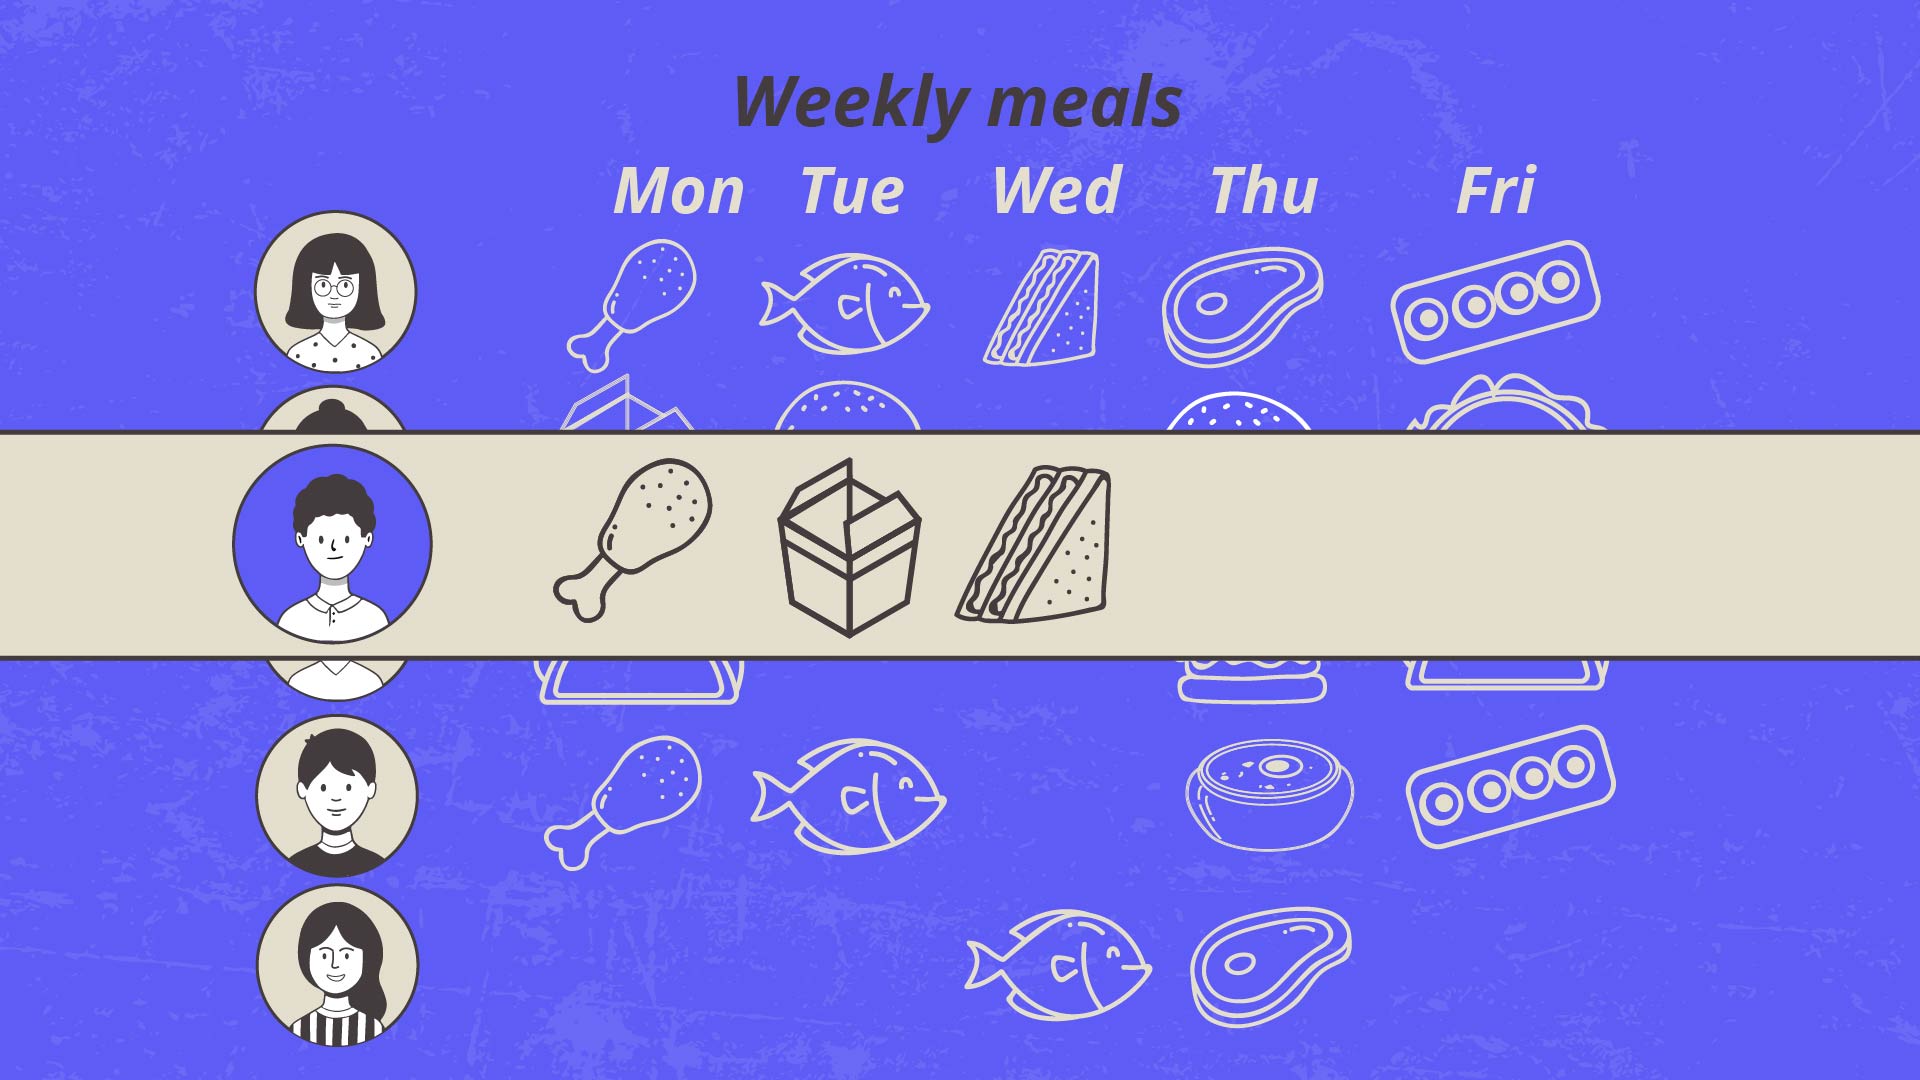 Weekly meals - Food ordering app video